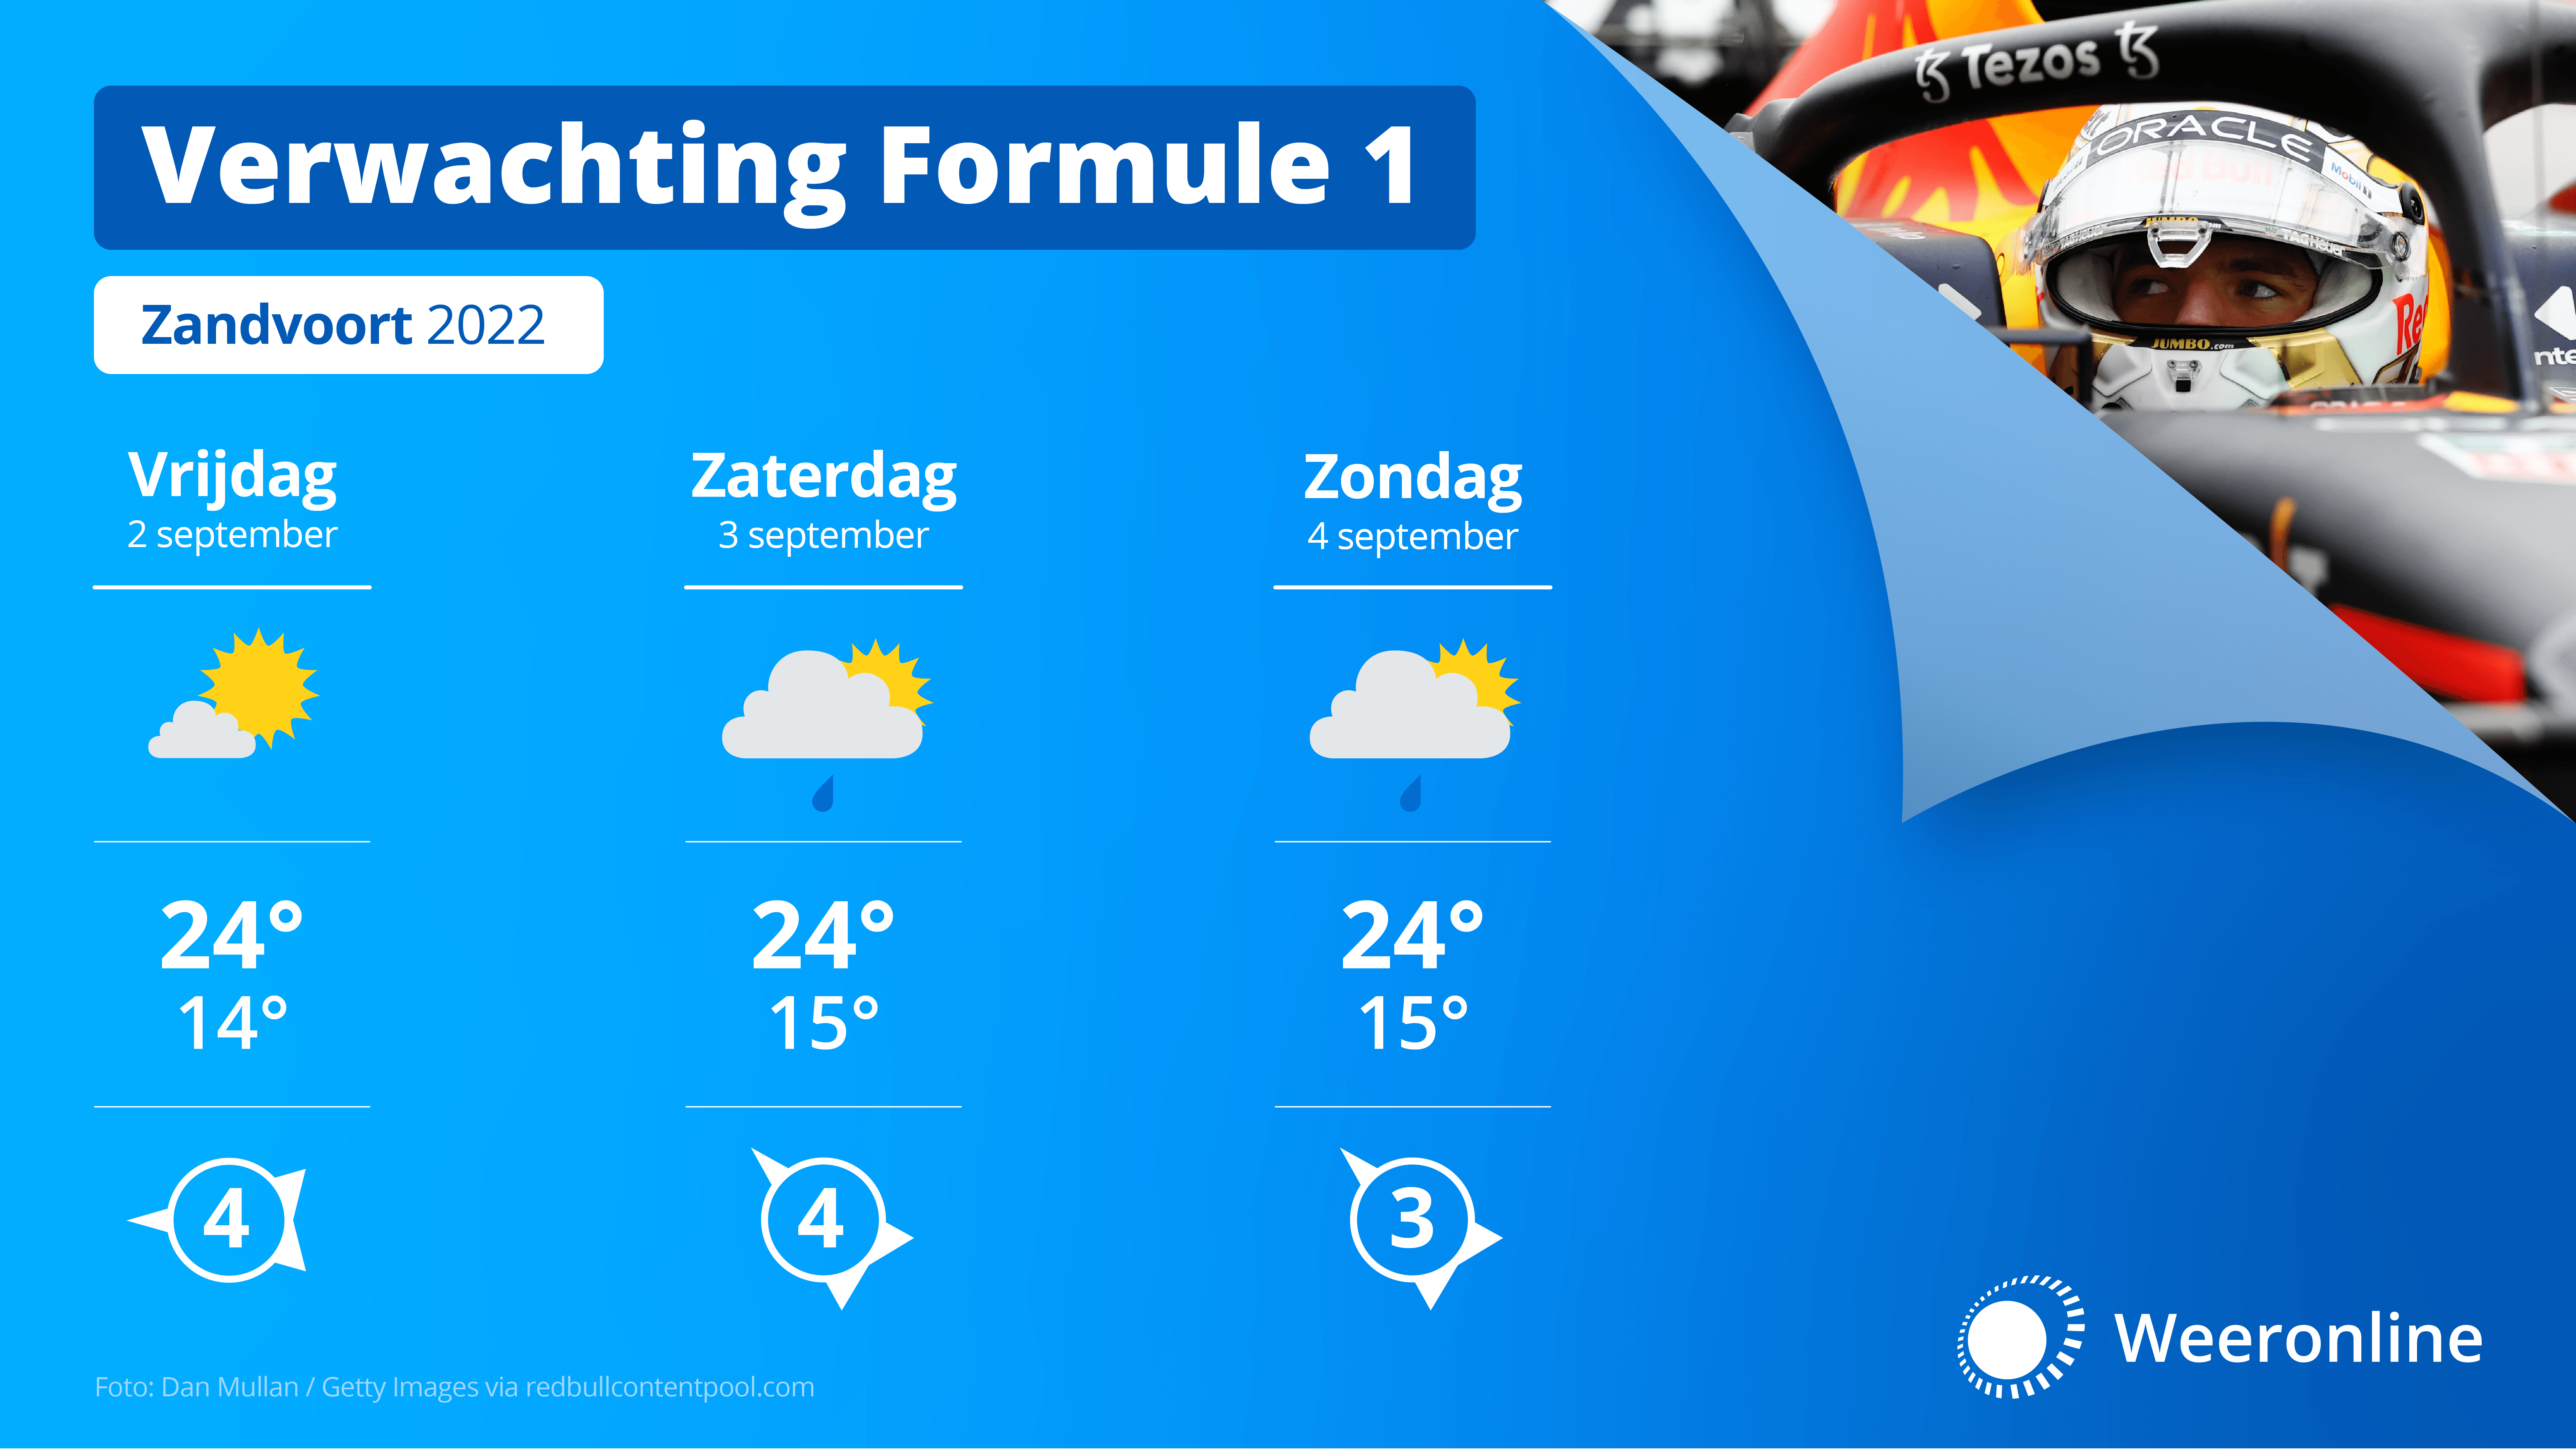 Verwachting Formule 1 Zandvoort 29-8-2022